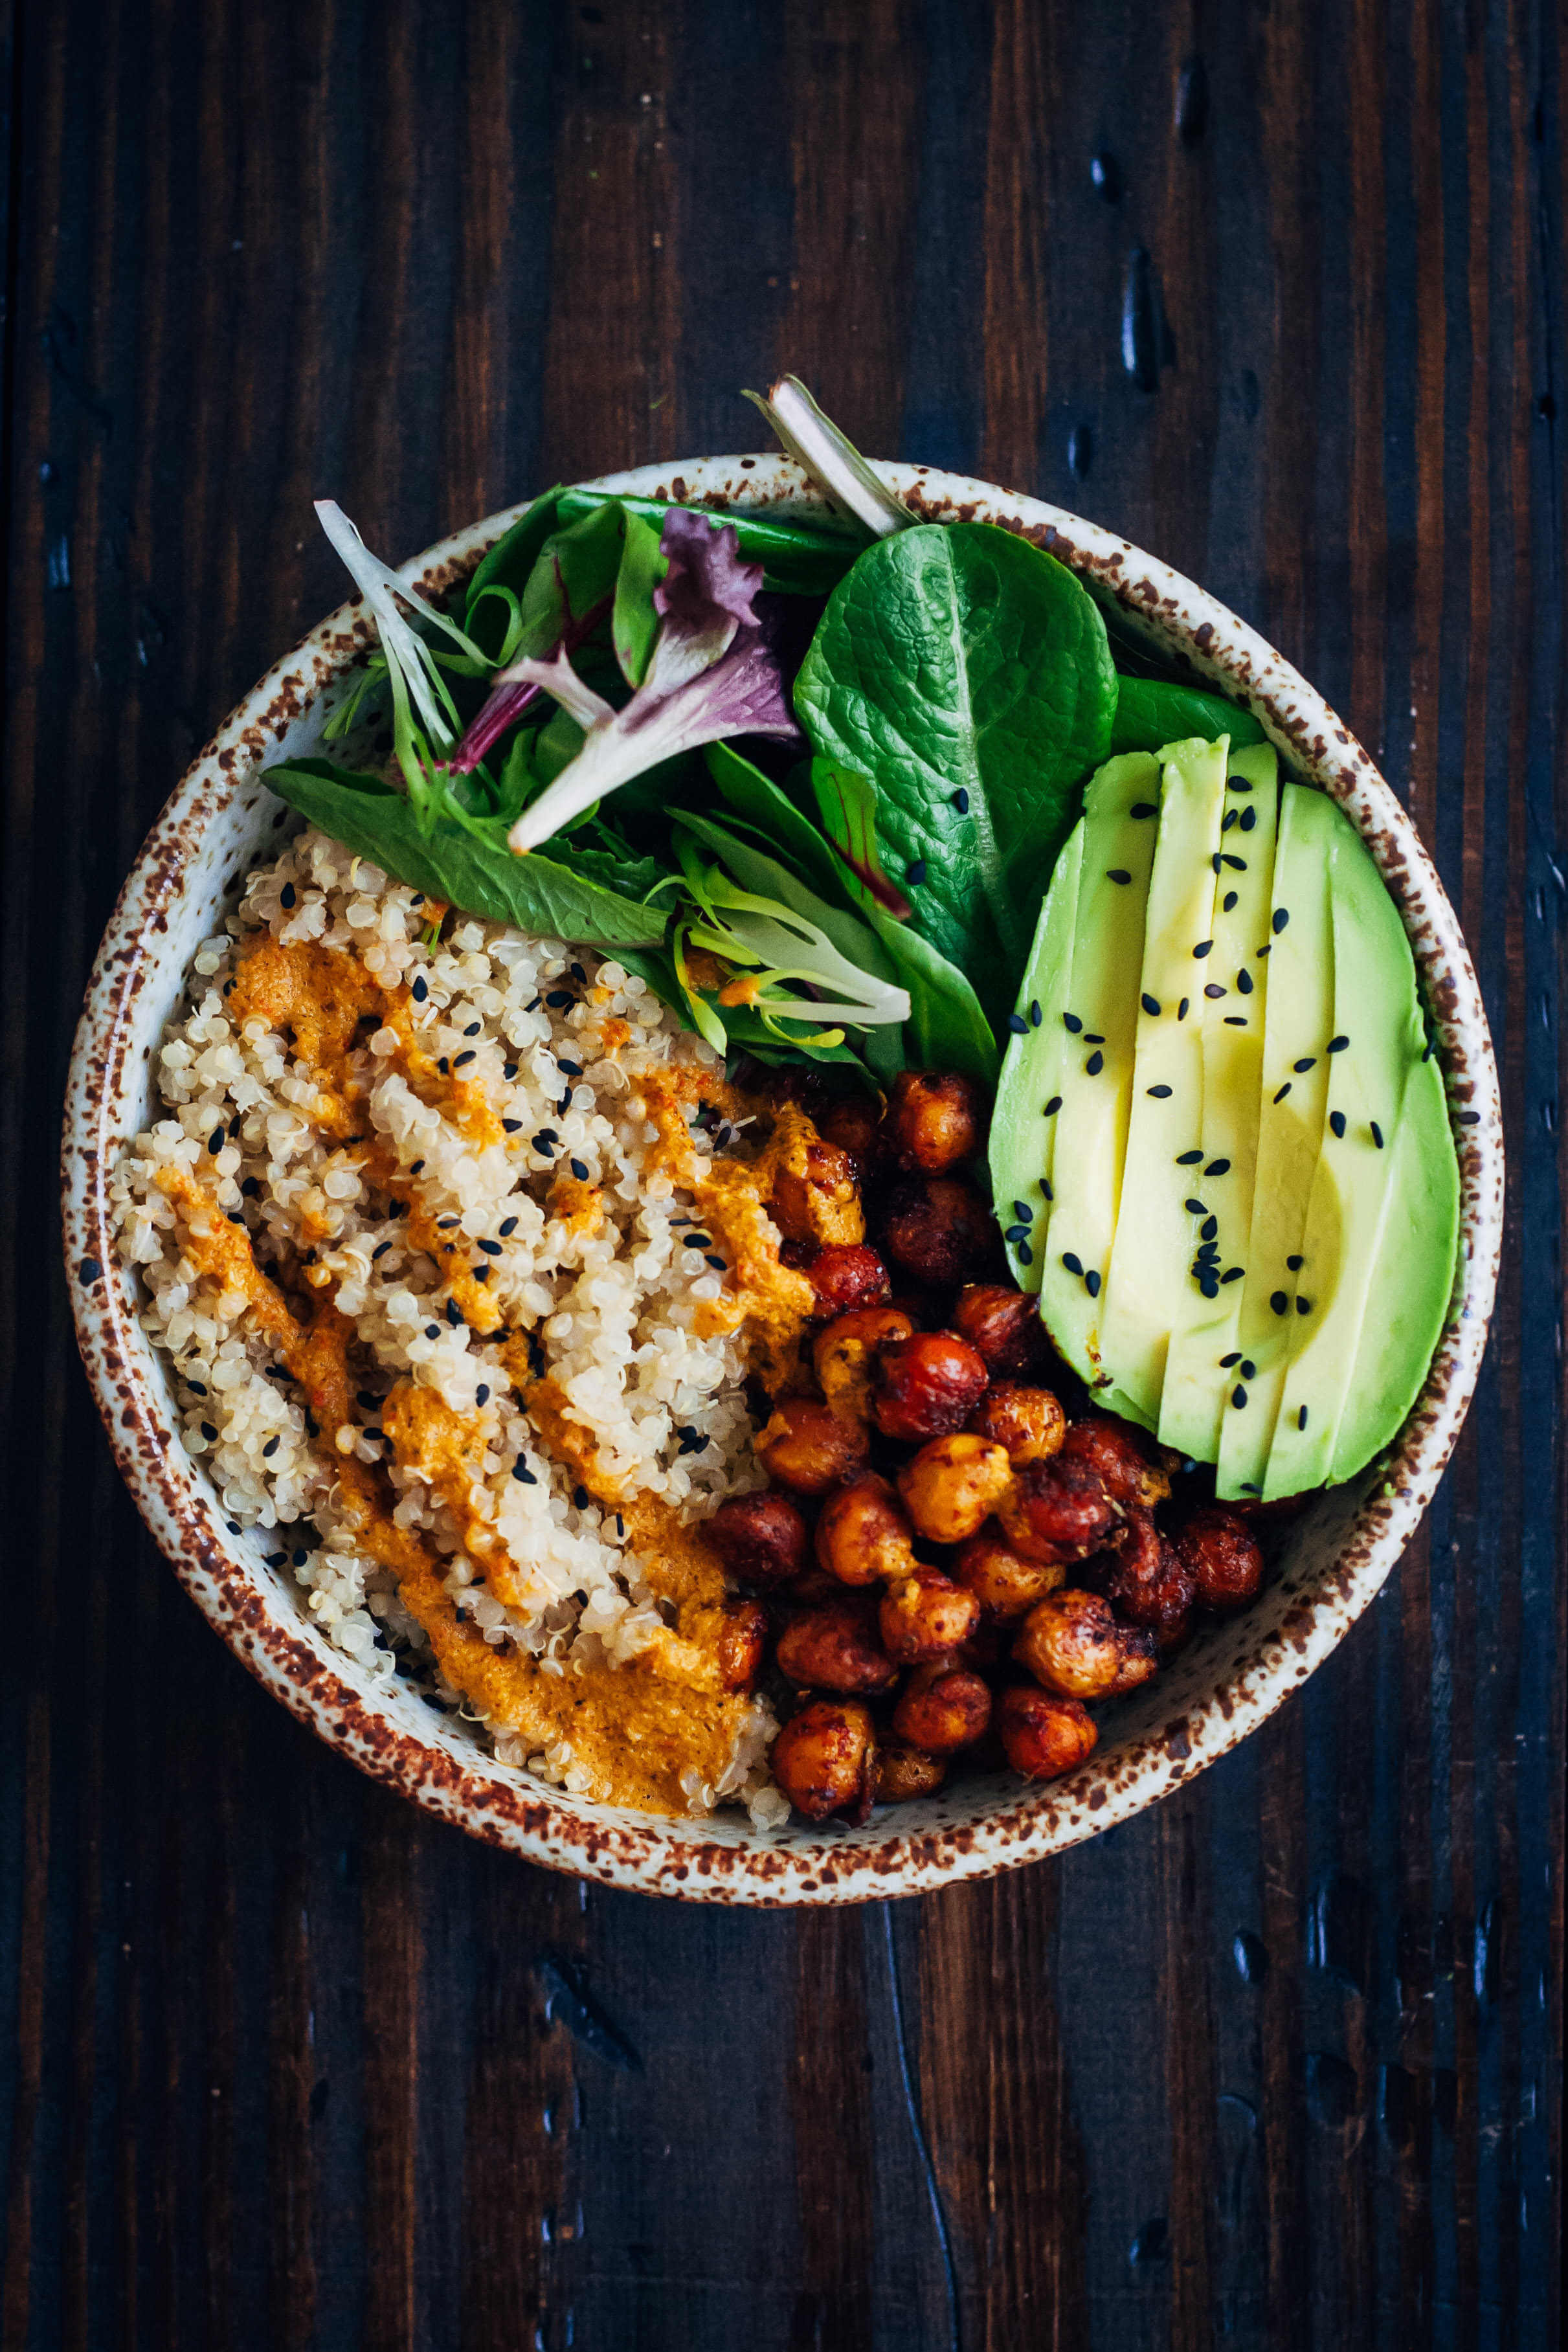 Healthy Vegan Recipes For Dinner
 25 Vegan Dinner Recipes Easy Healthy Plant based